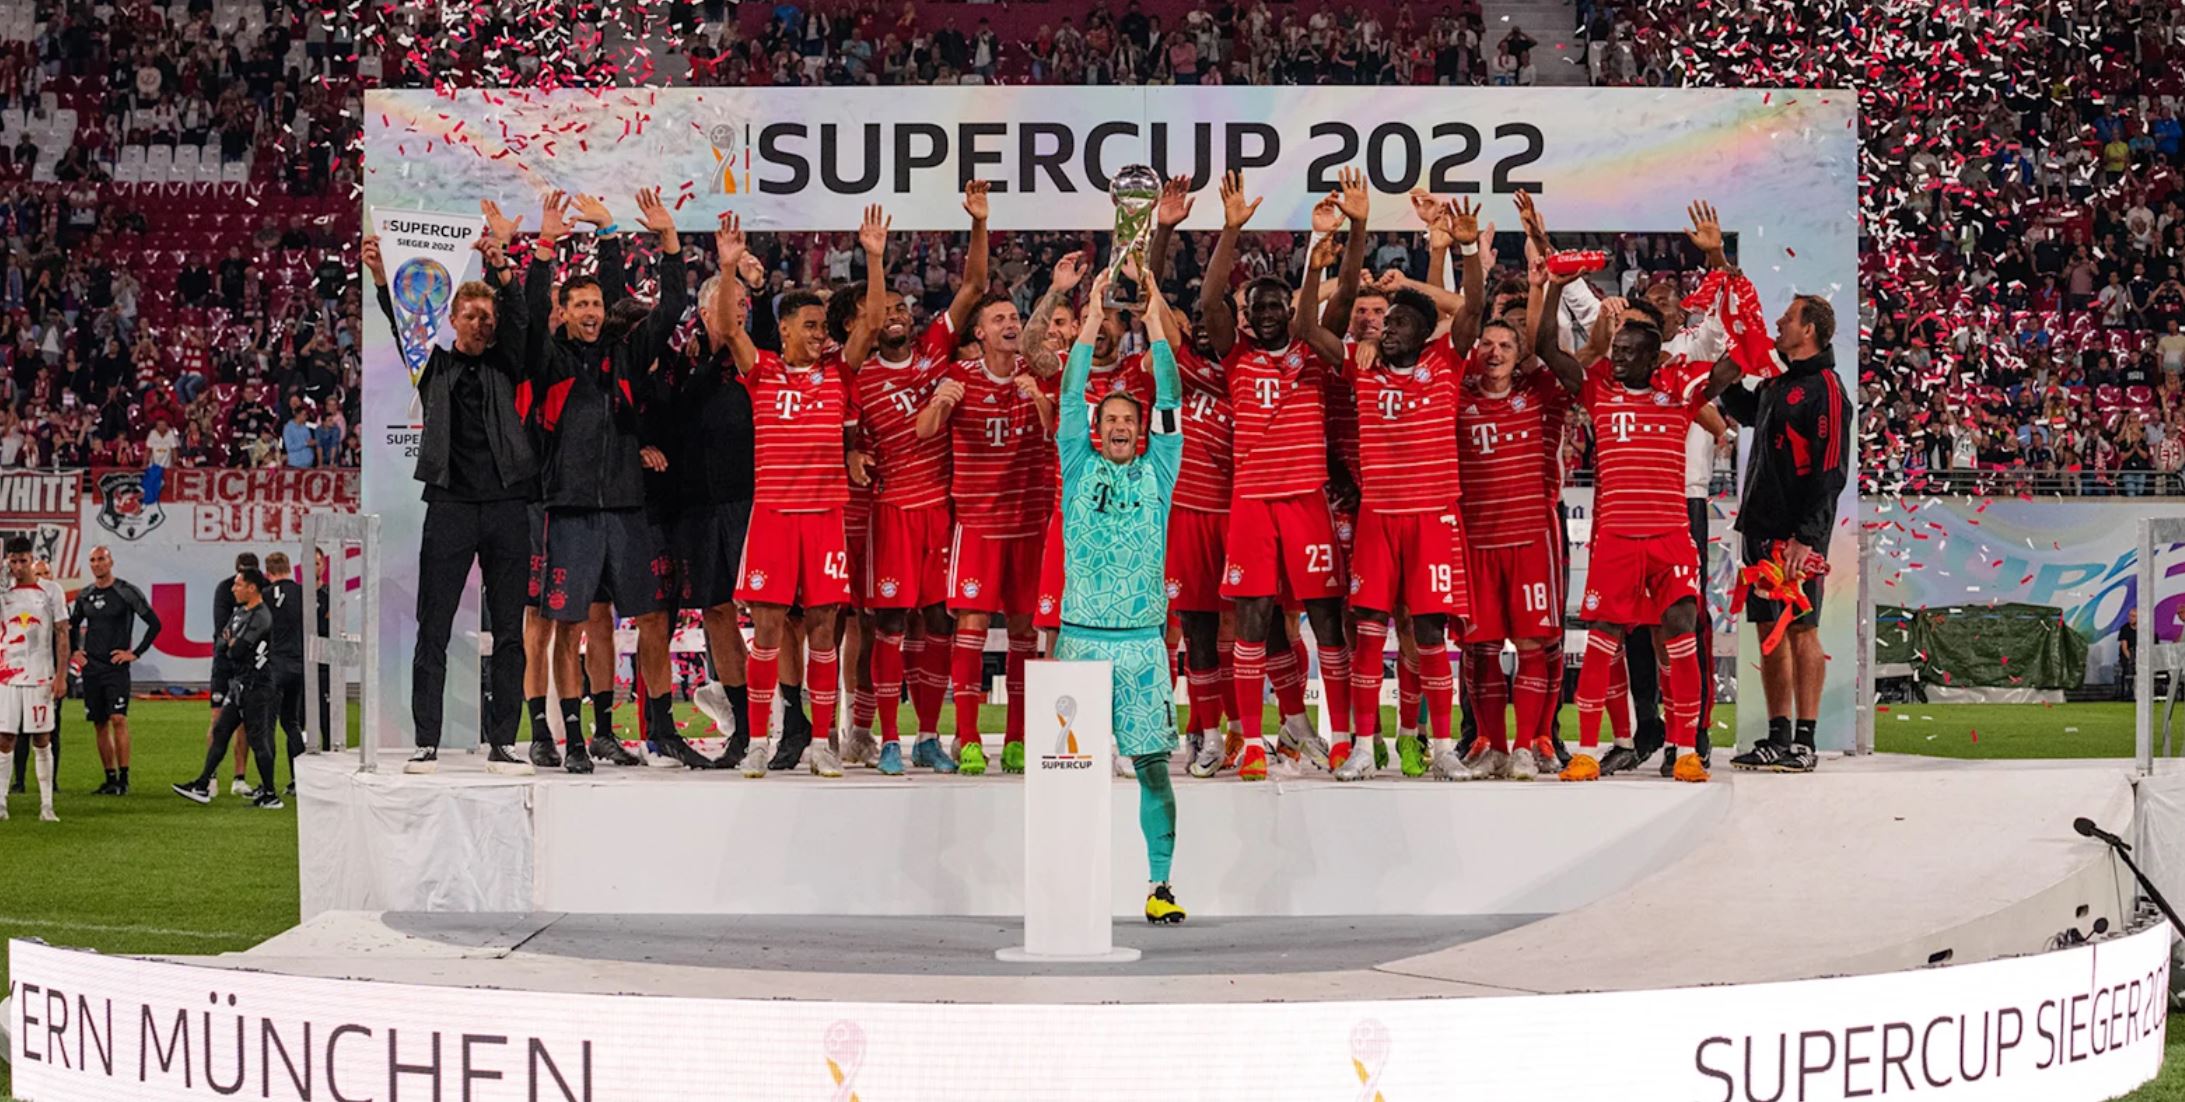 2022 Supercup